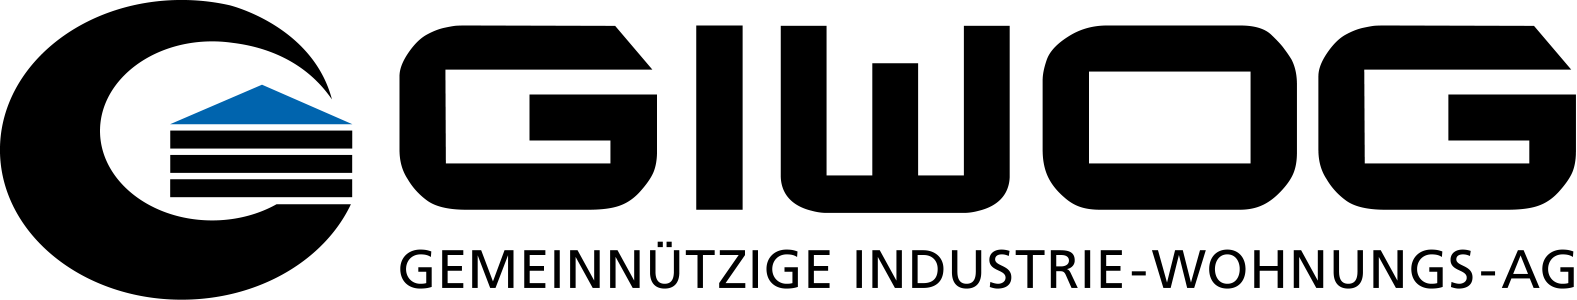 giwog logo transparent